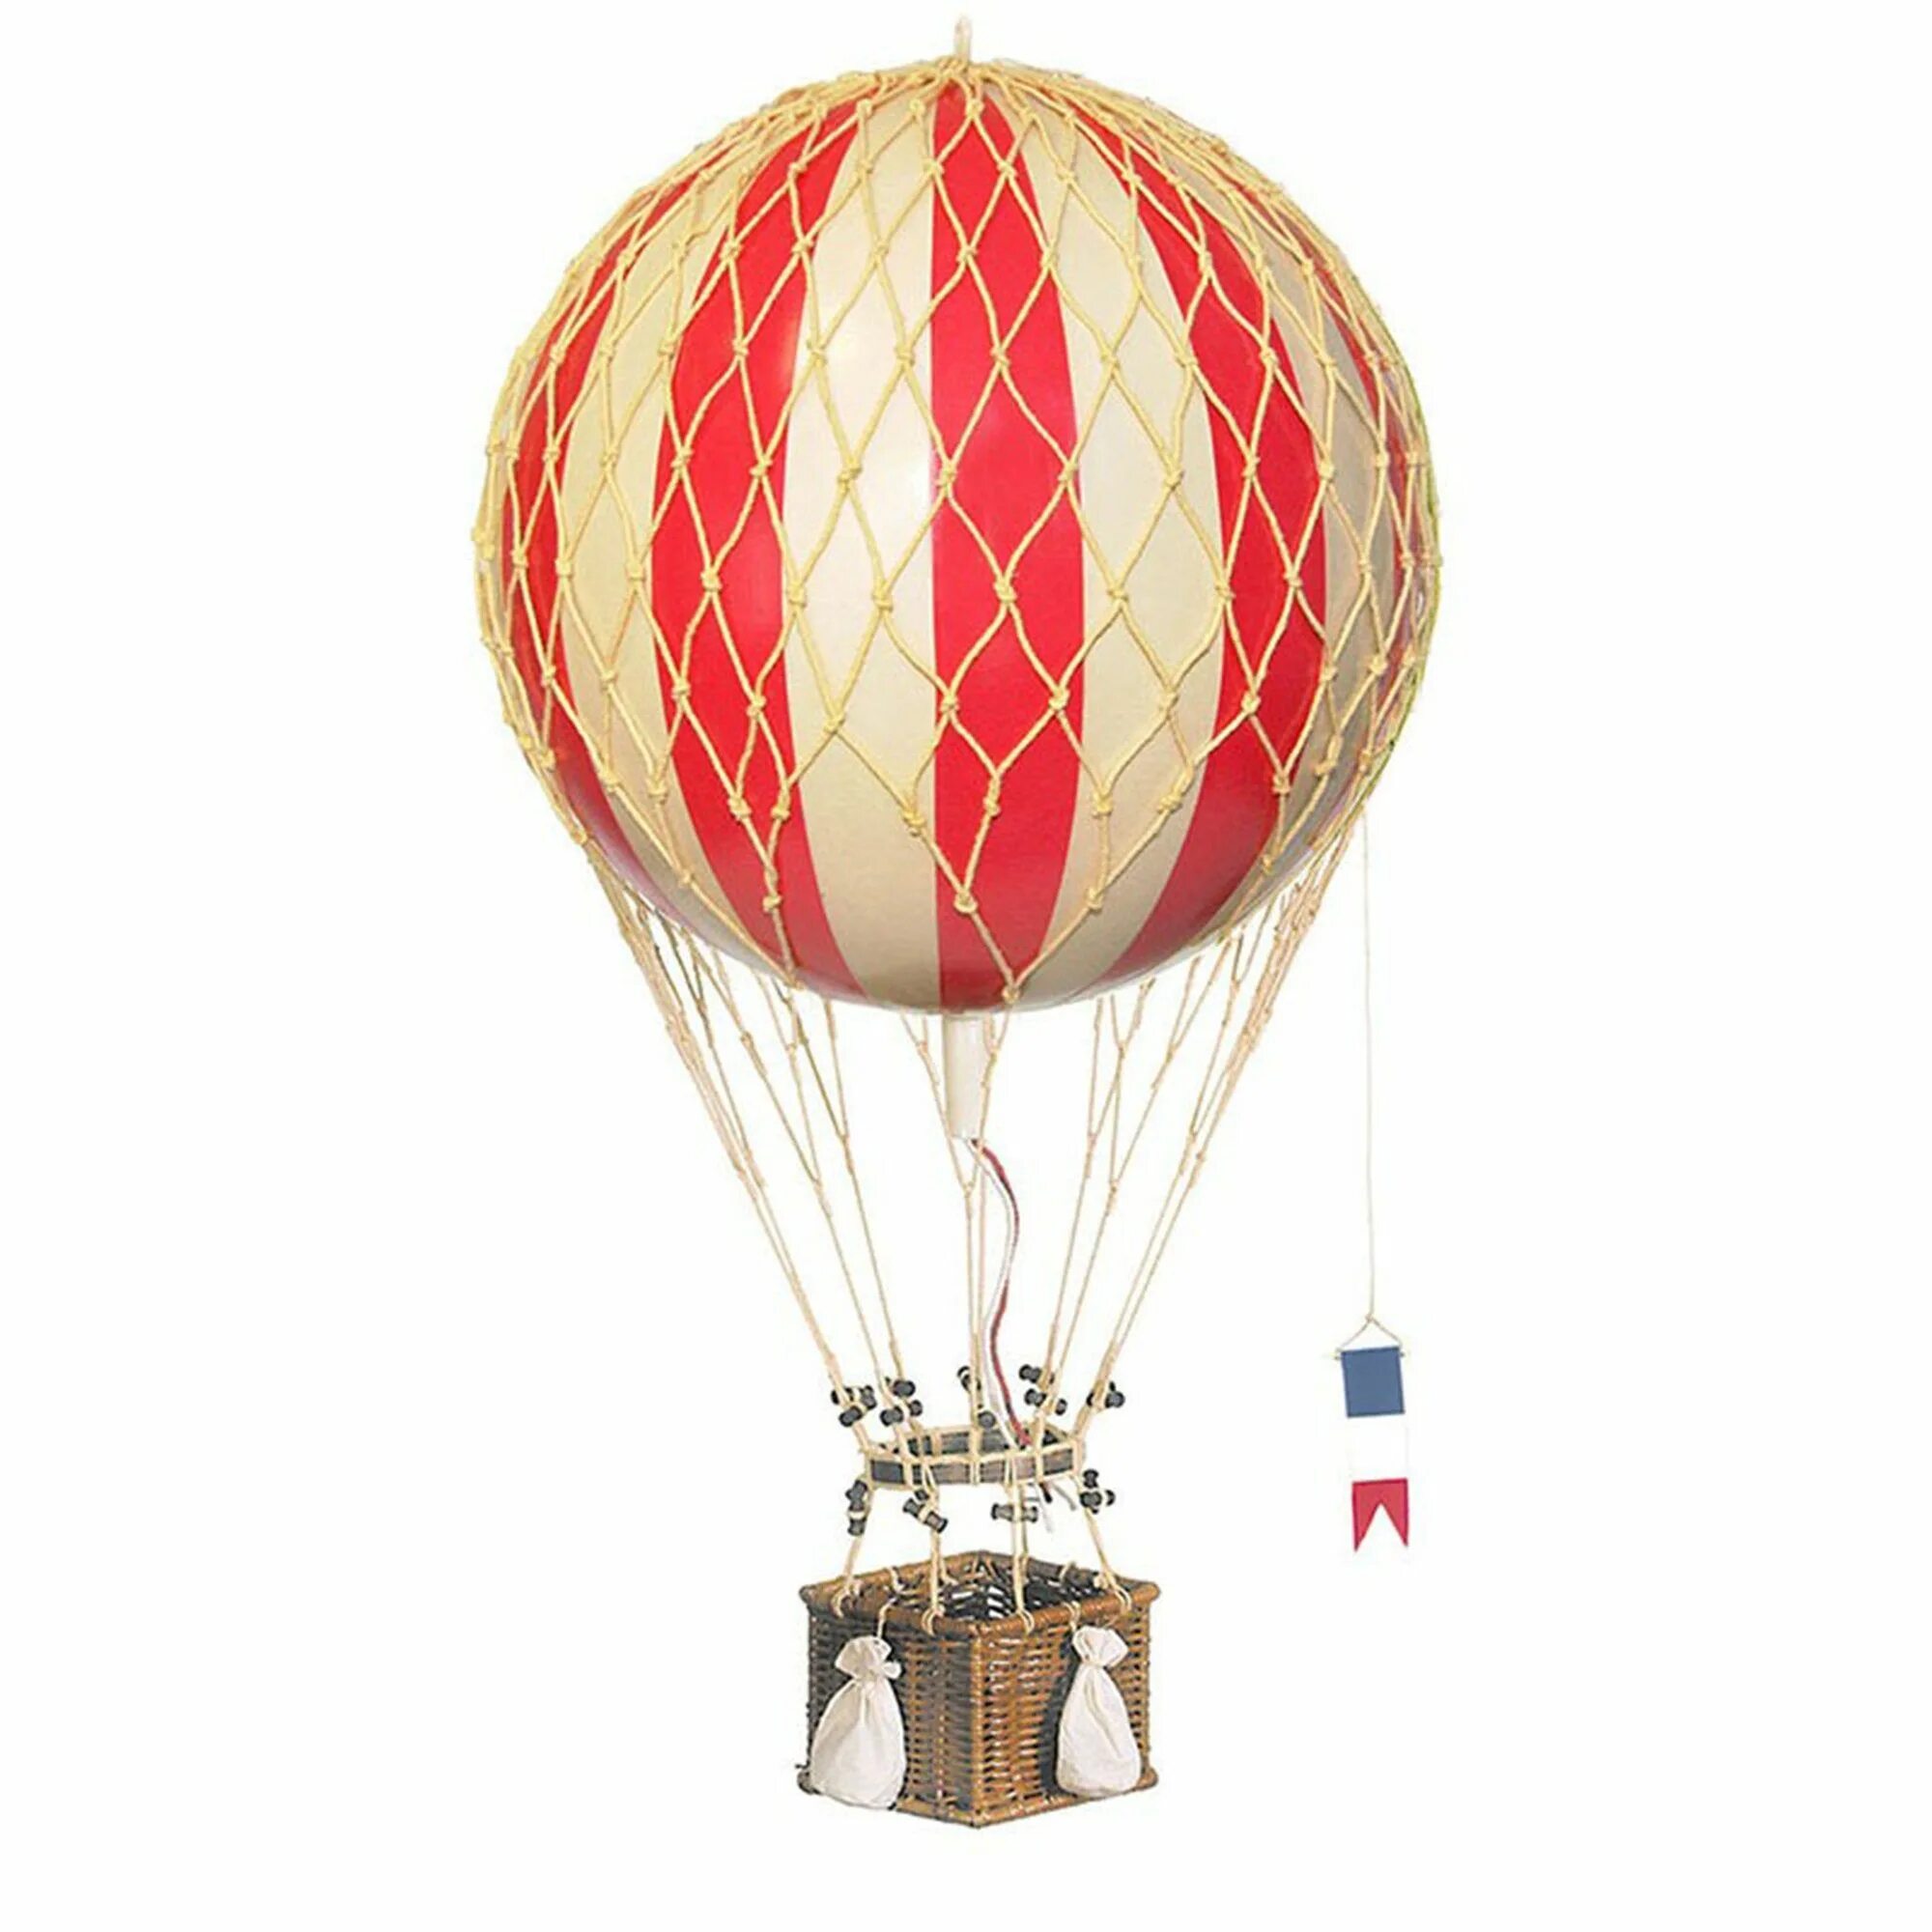 Модели воздушных шаров. Воздушный шар Жюль Верн. Игрушечный воздушный шар. Корзинка для воздушного шара. Декоративный воздушный шар.